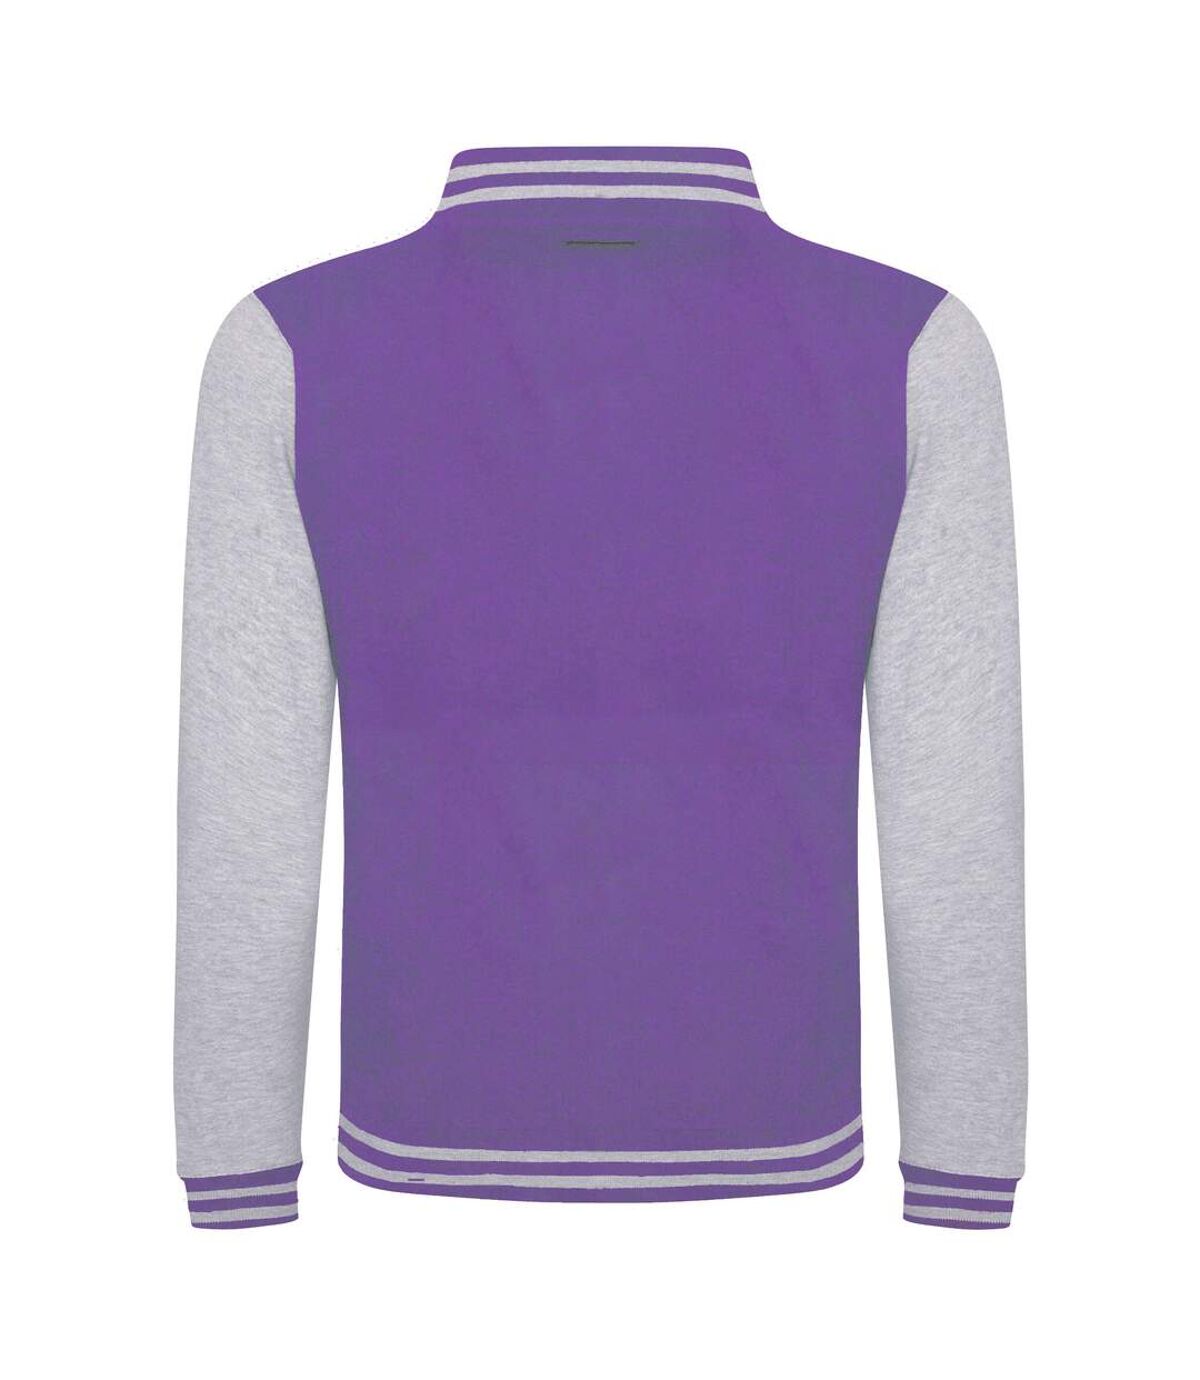 Awdis Unisex Varsity Jacket (Purple/ Heather Gray)